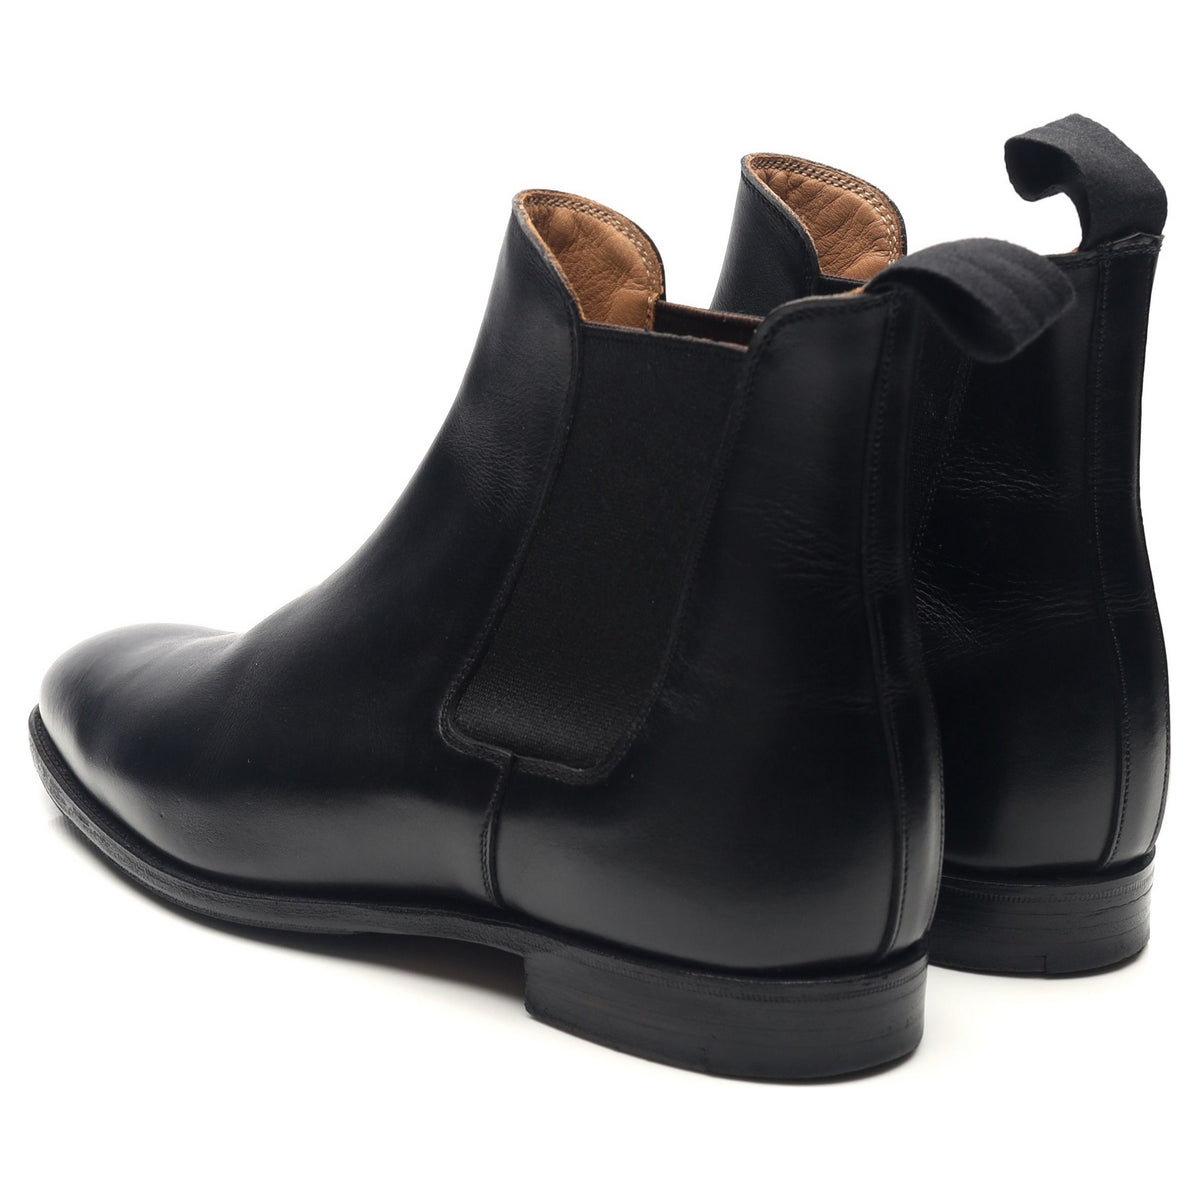 Women's 'Bonnie' Black Leather Chelsea Boots UK 5 C - Abbot's Shoes